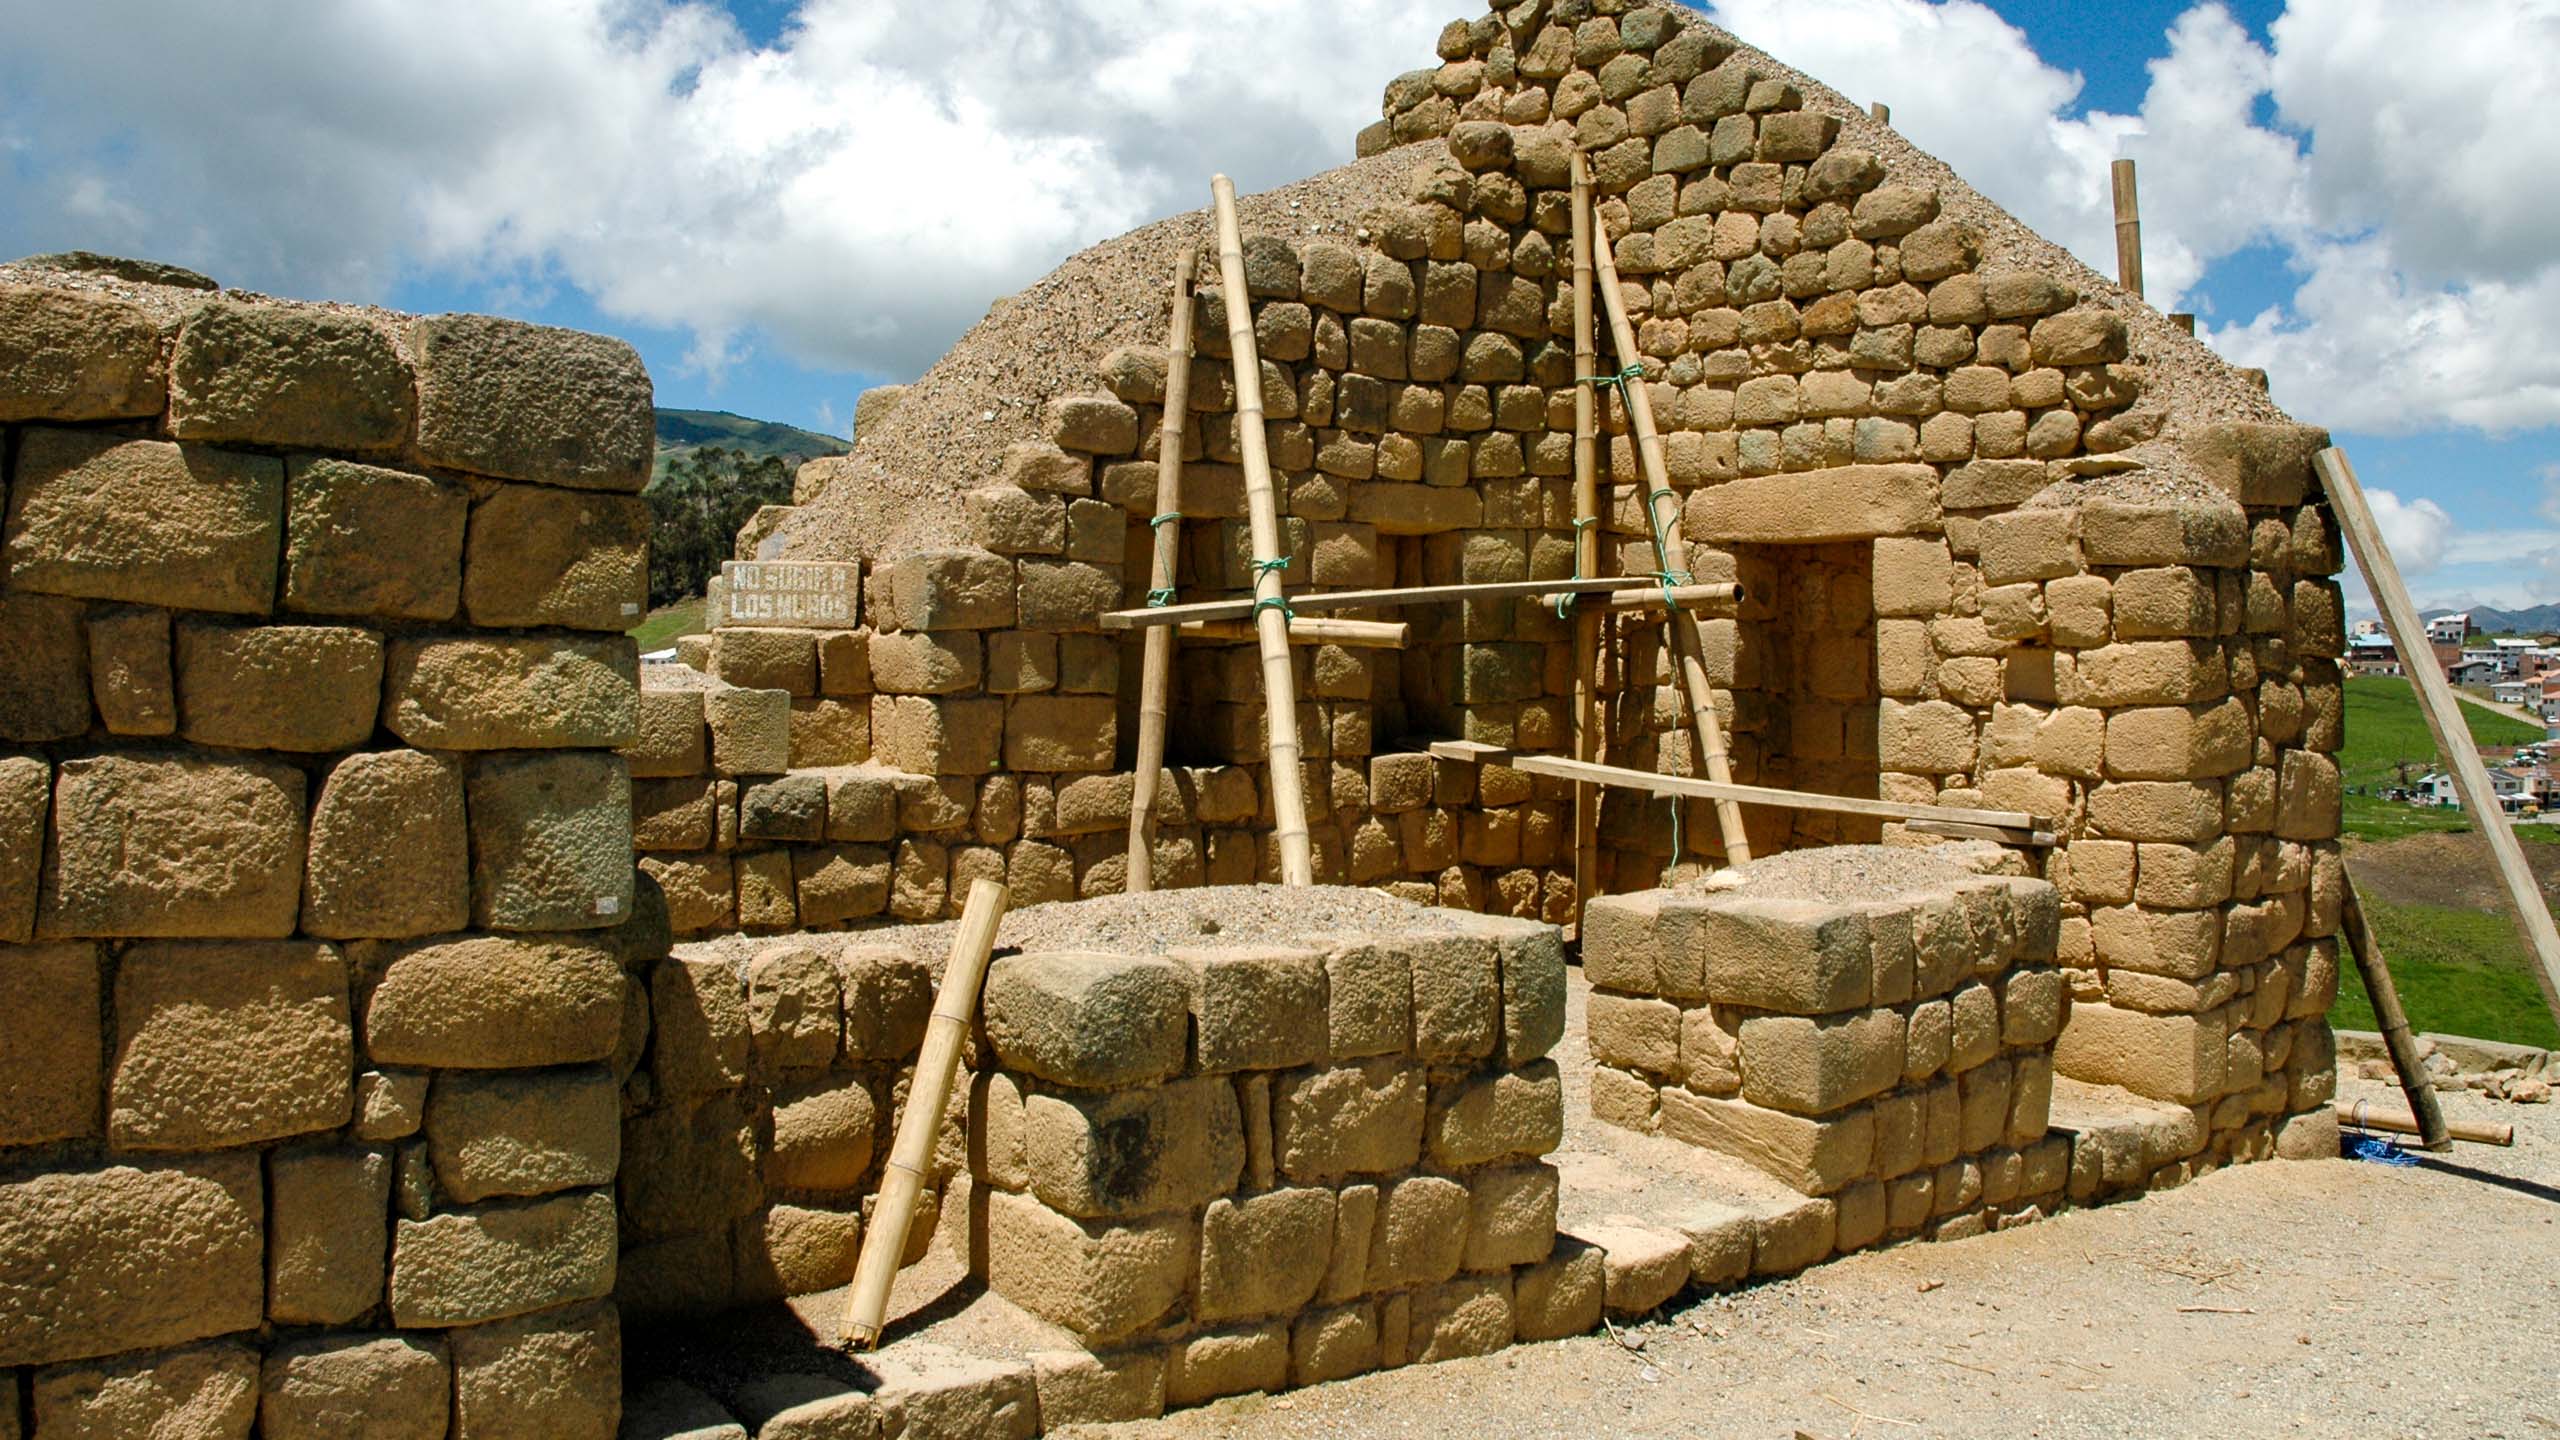 Partially built stone building in Ecuador